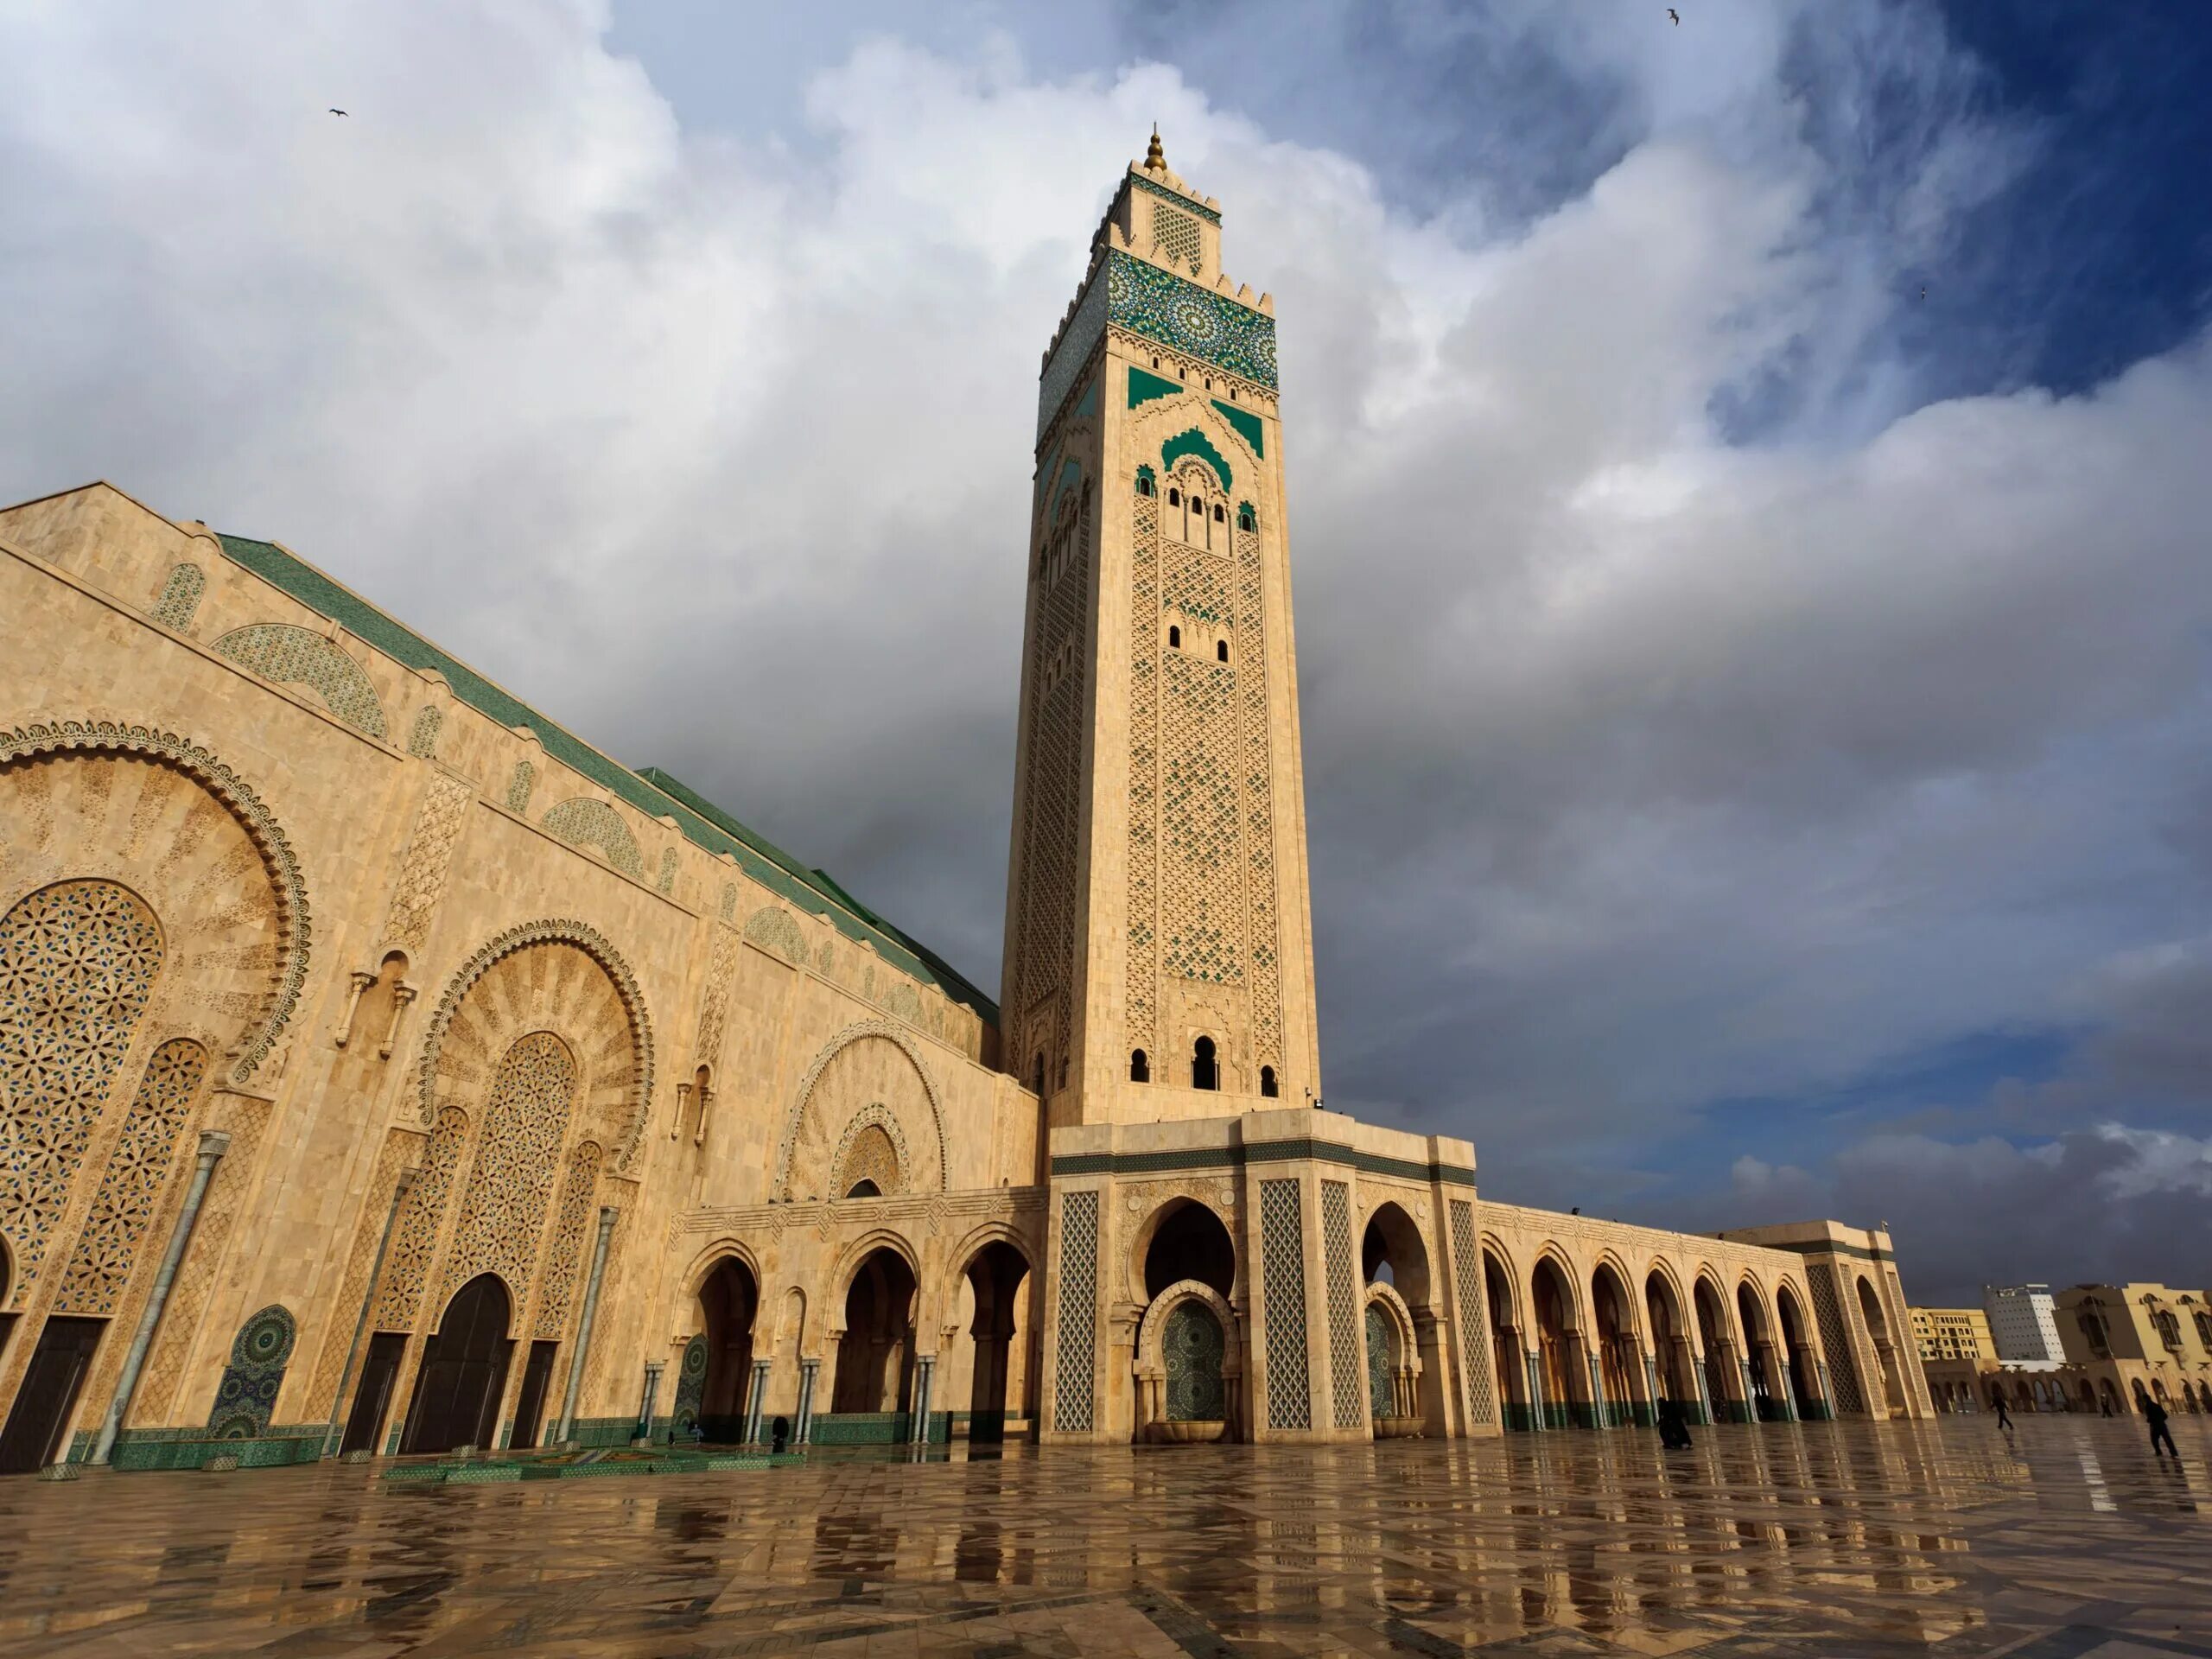 Город касабланка. Мечеть Хасана II Марокко. Мечеть в Касабланке Марокко. Великая мечеть Хассана II, Касабланка. Великая мечеть Хасана второго, Касабланка, Марокко.